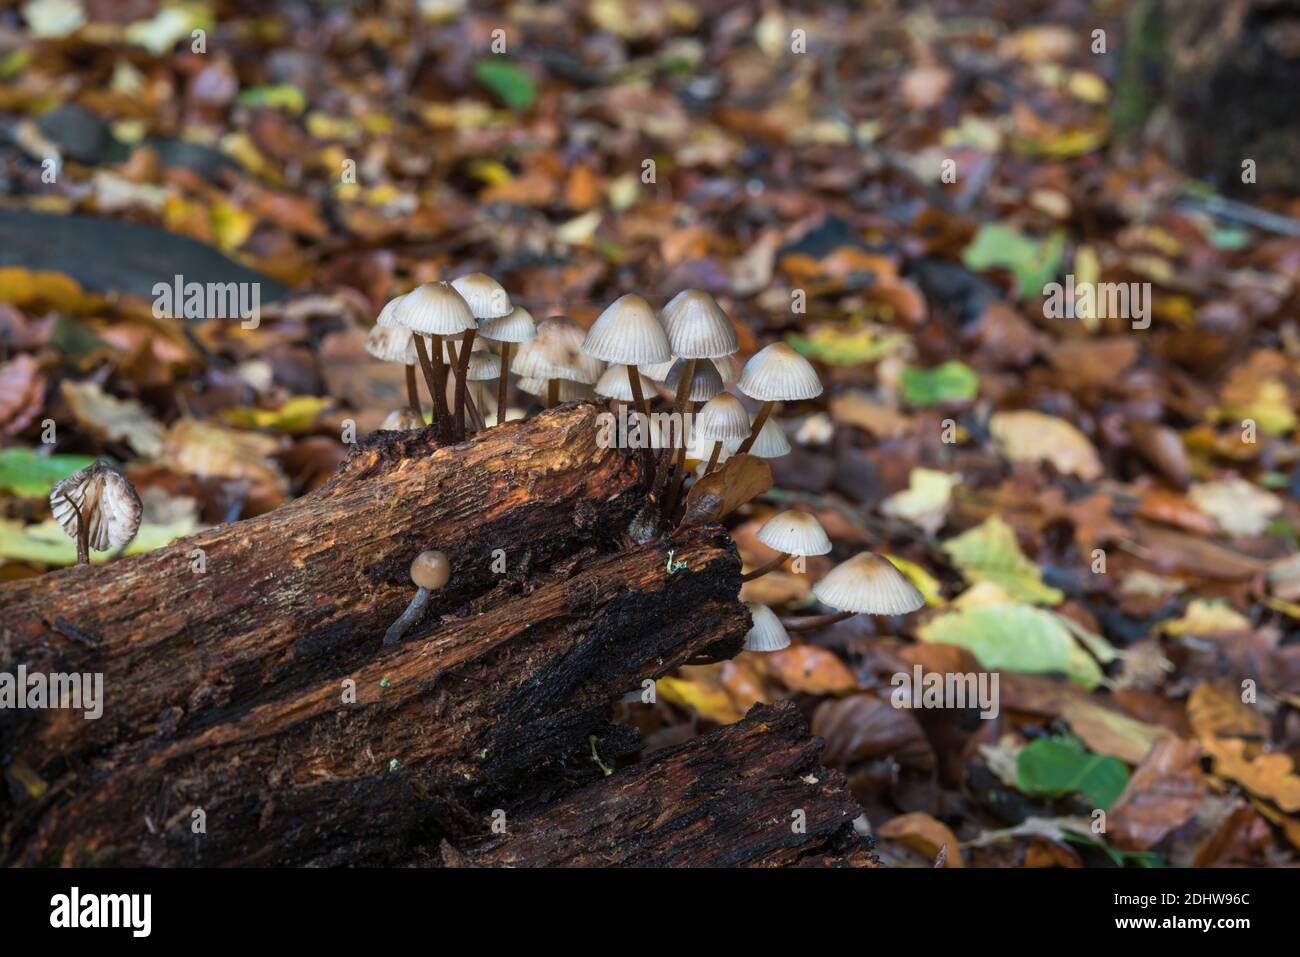 Fungi - Mycena species Stock Photo